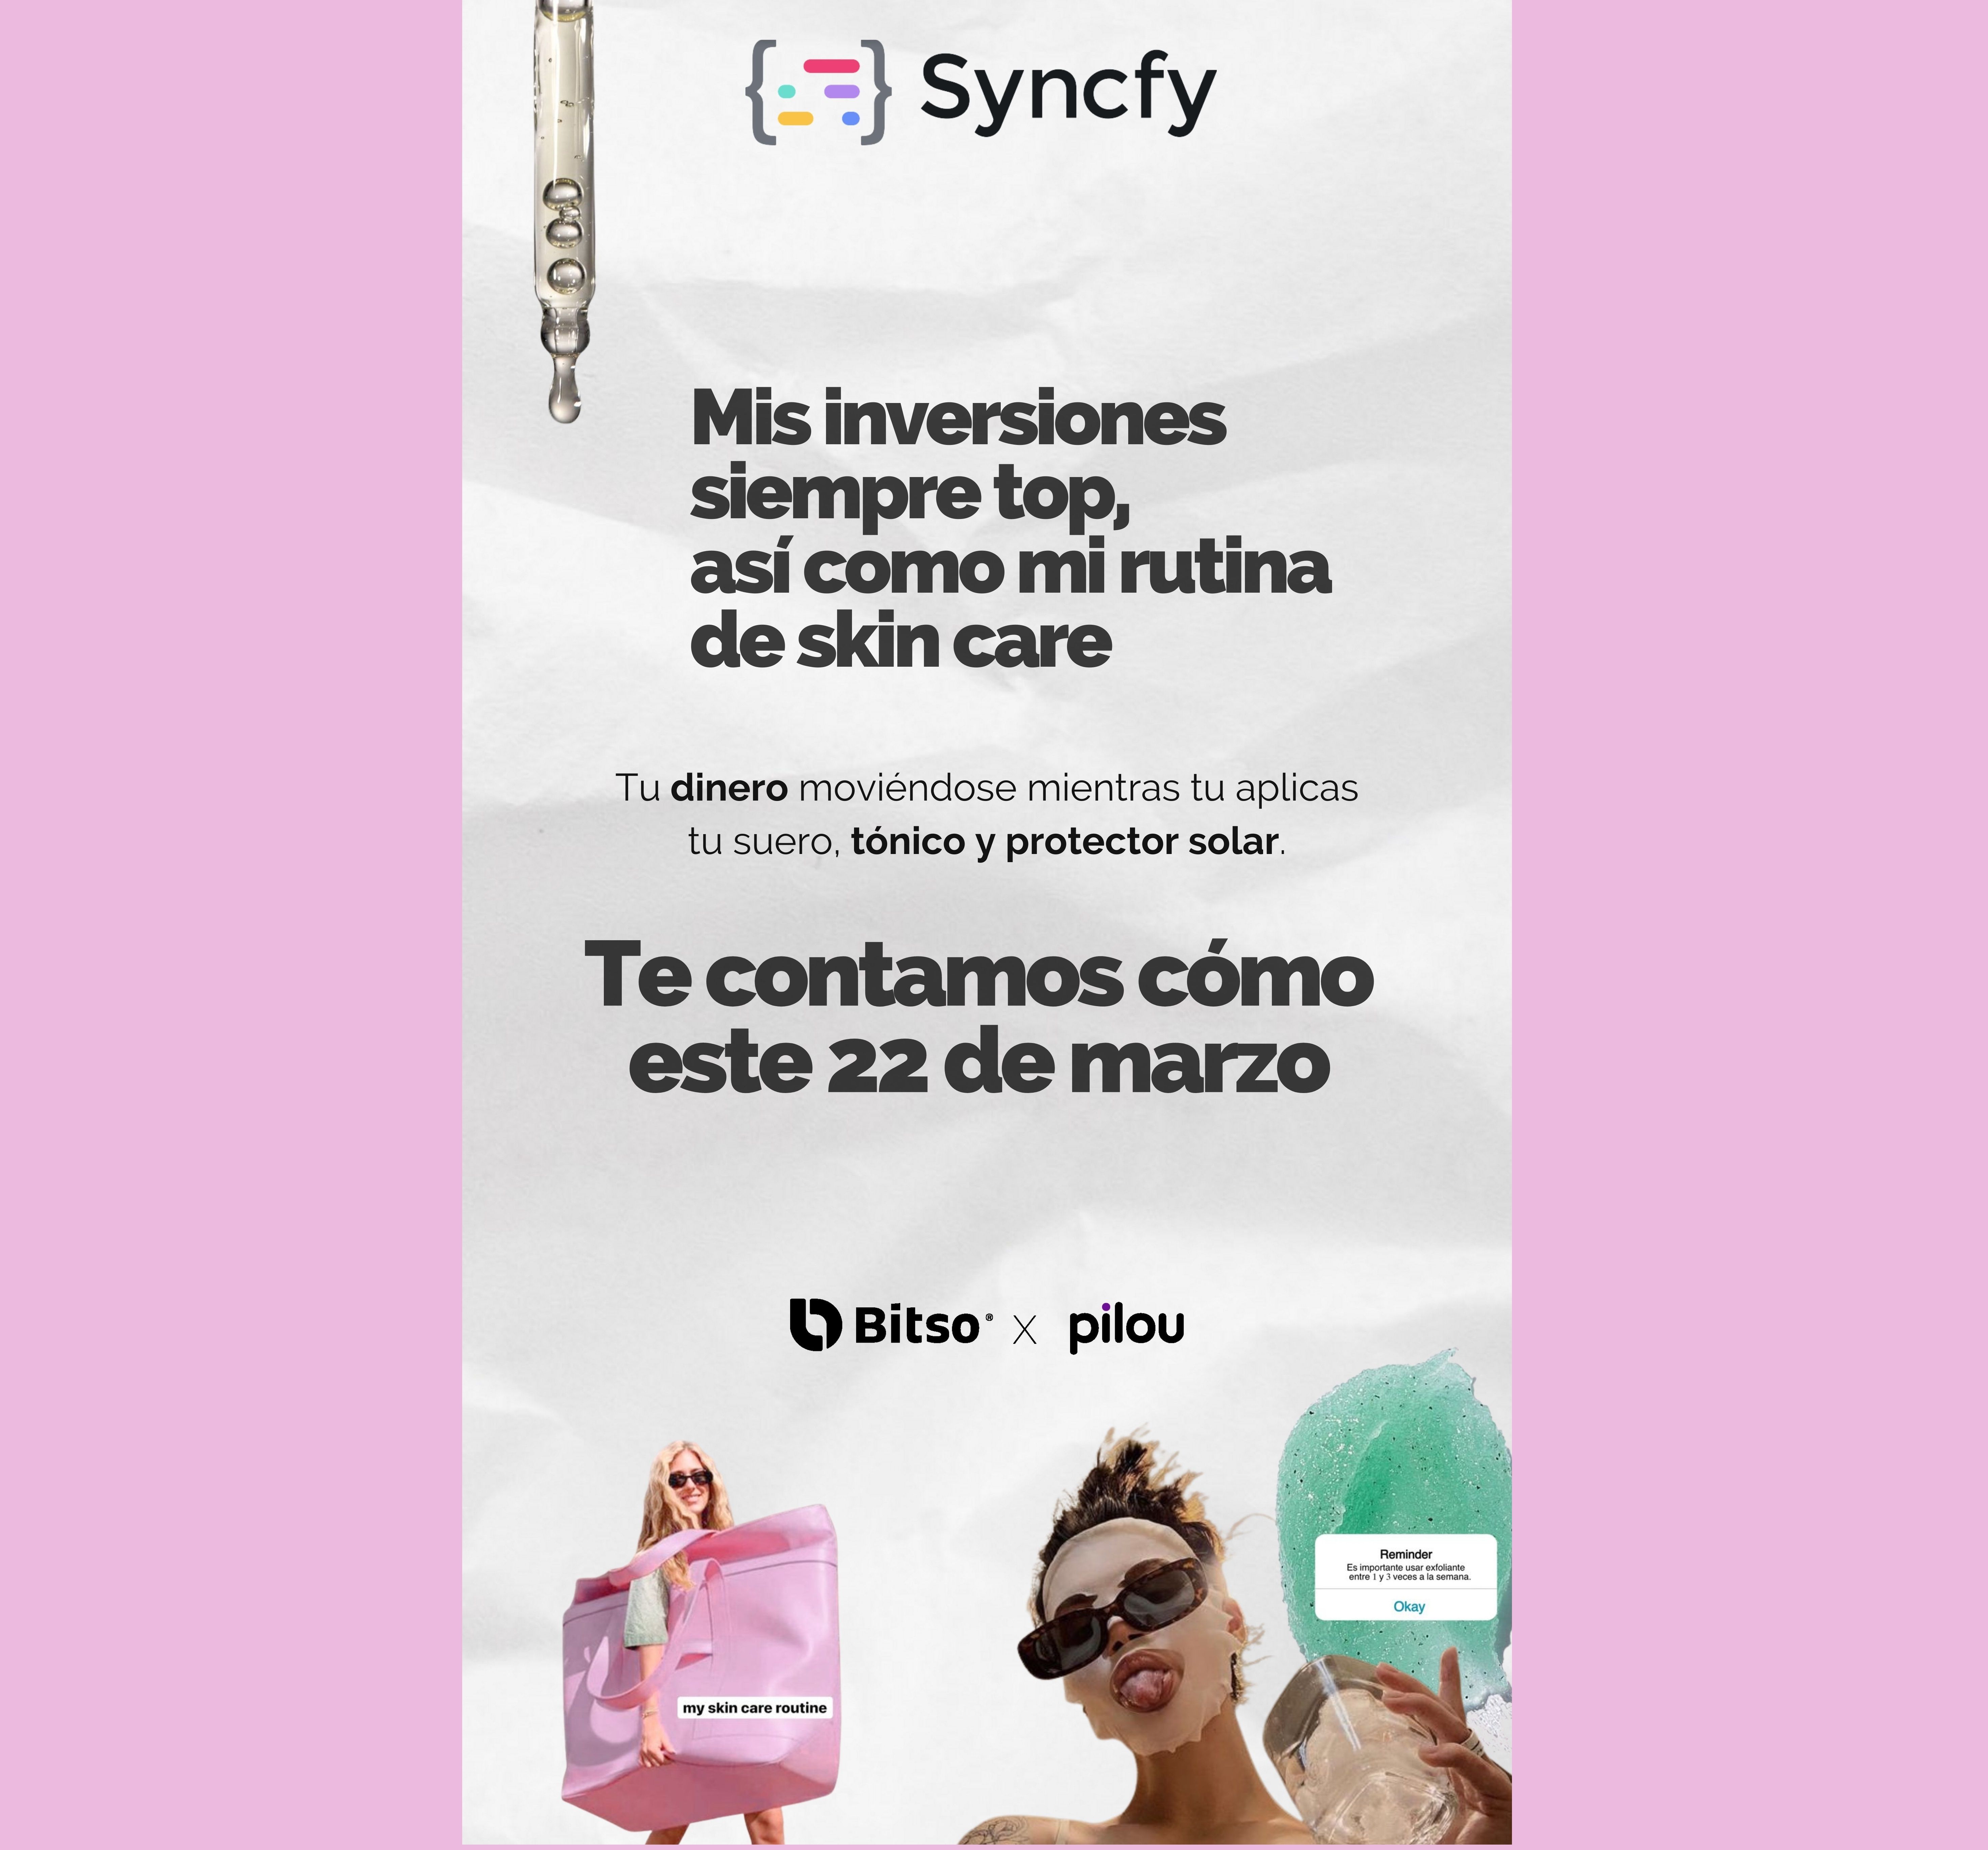 Syncfy se une como patrocinador de 